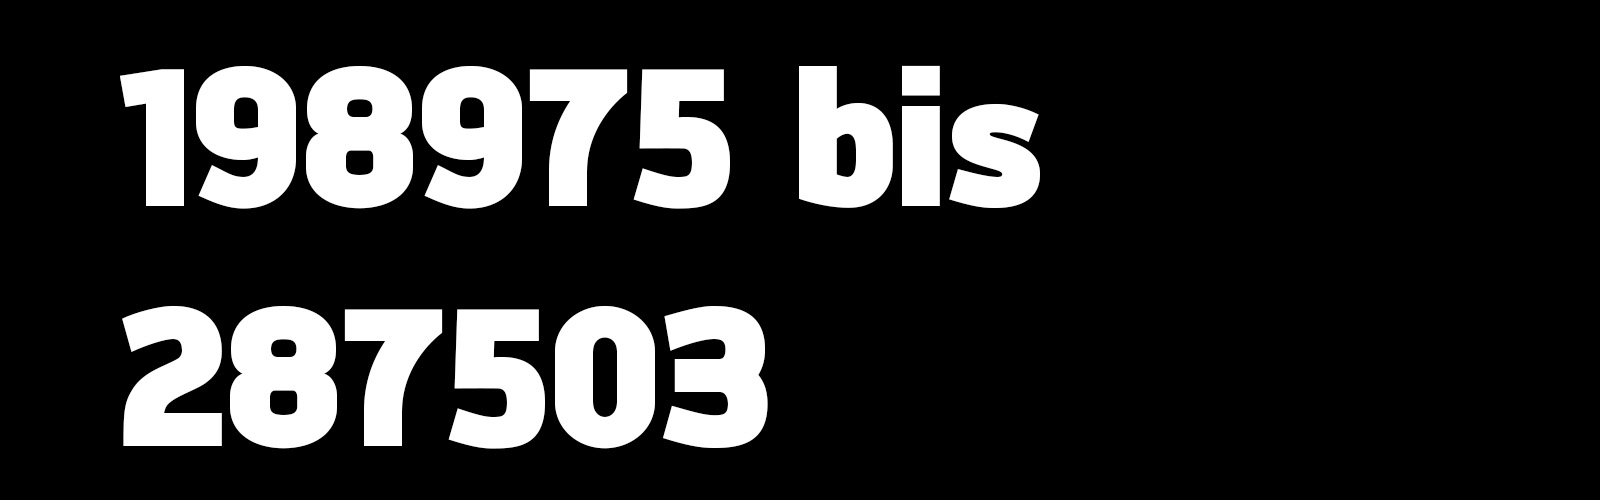 198975 Bis 287503